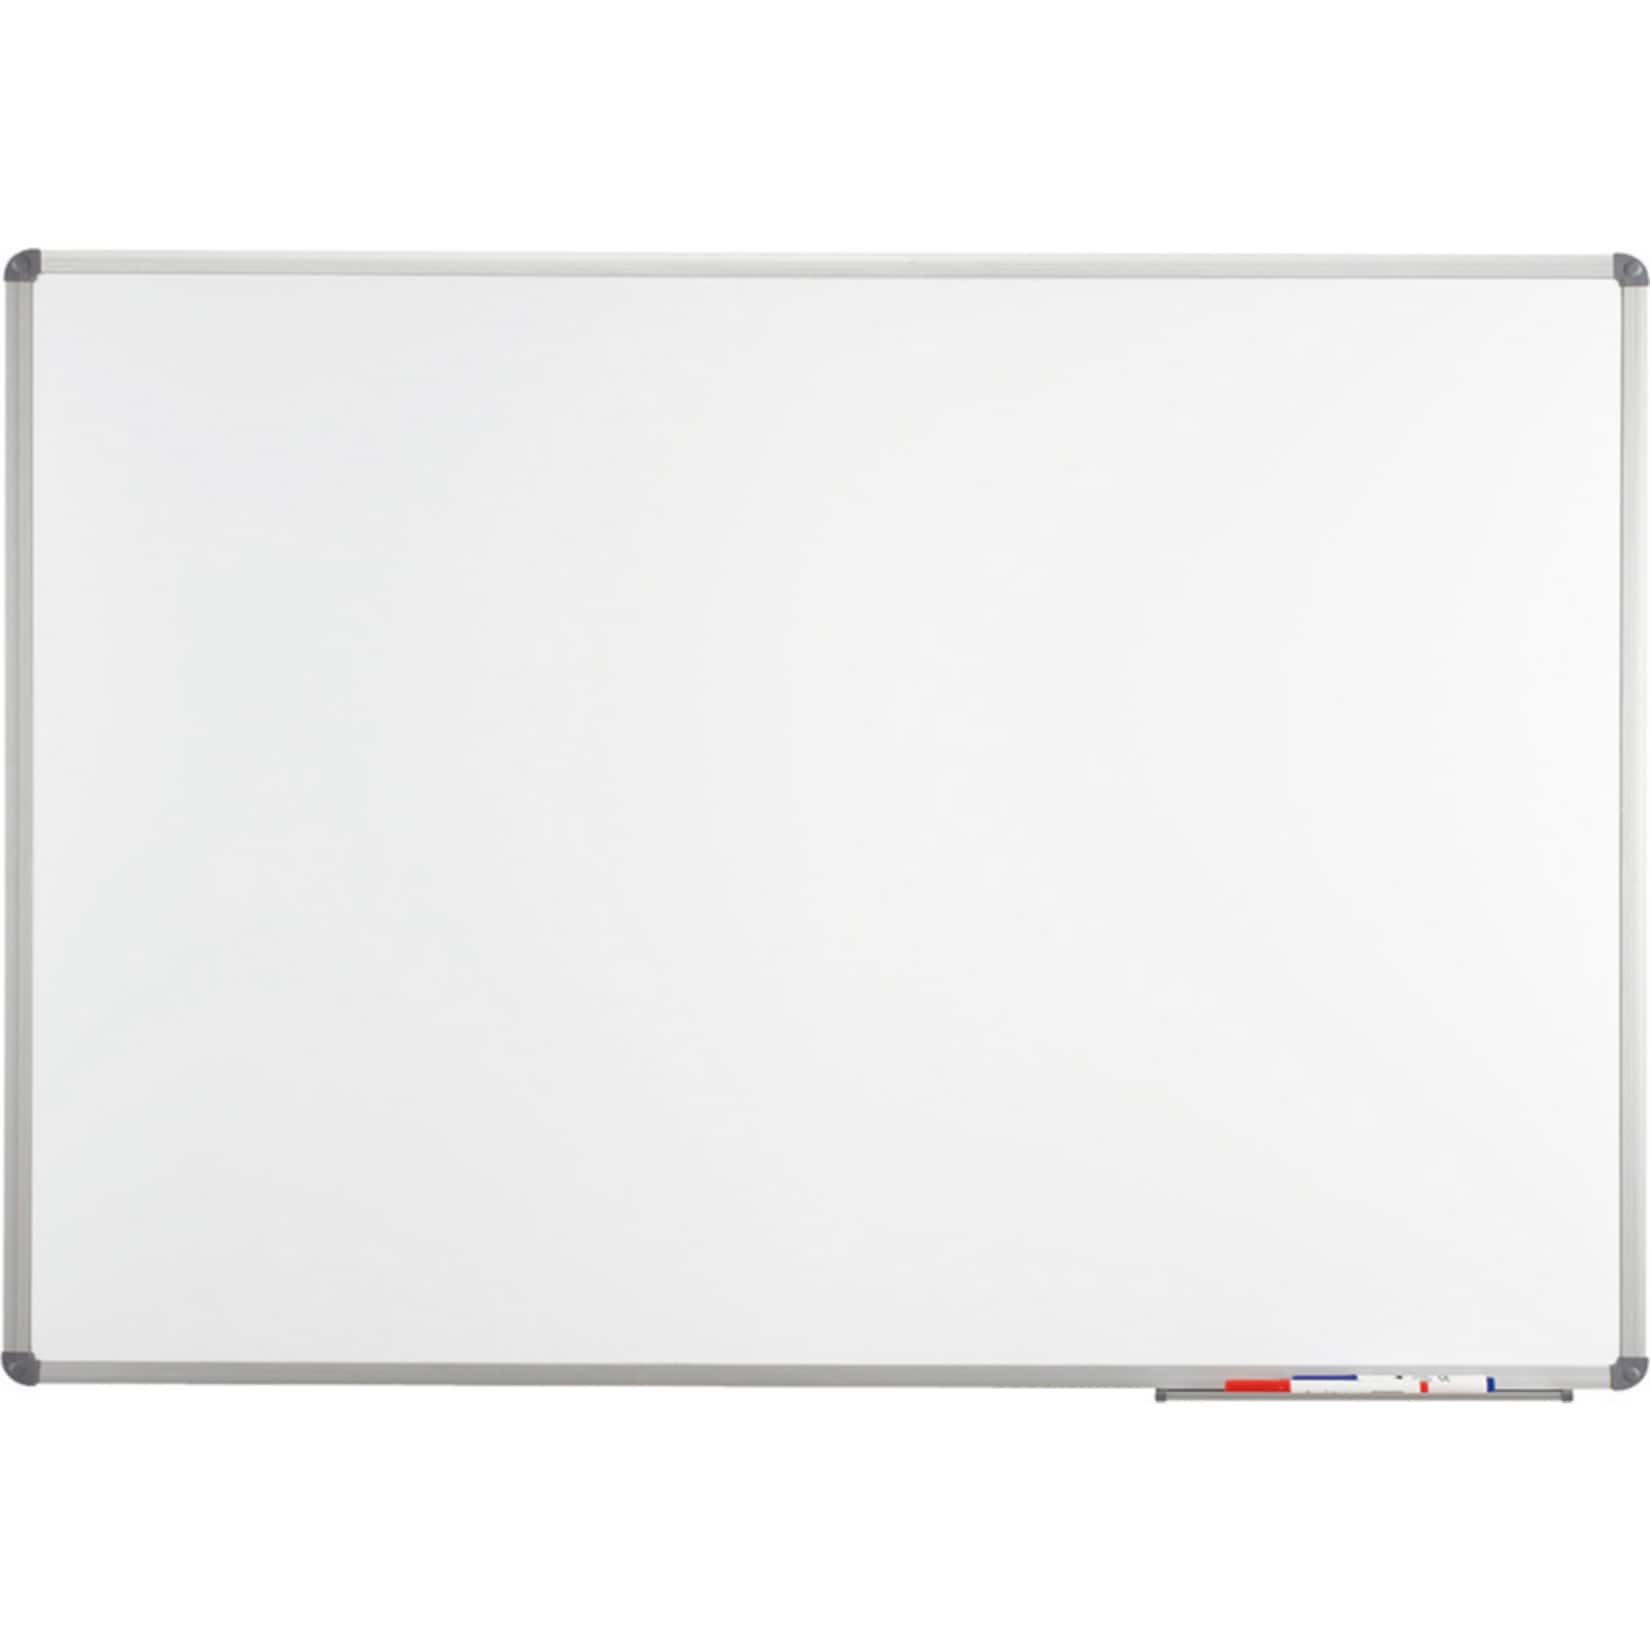 MAUL Whiteboard MAULstandard - 90 x 180 cm